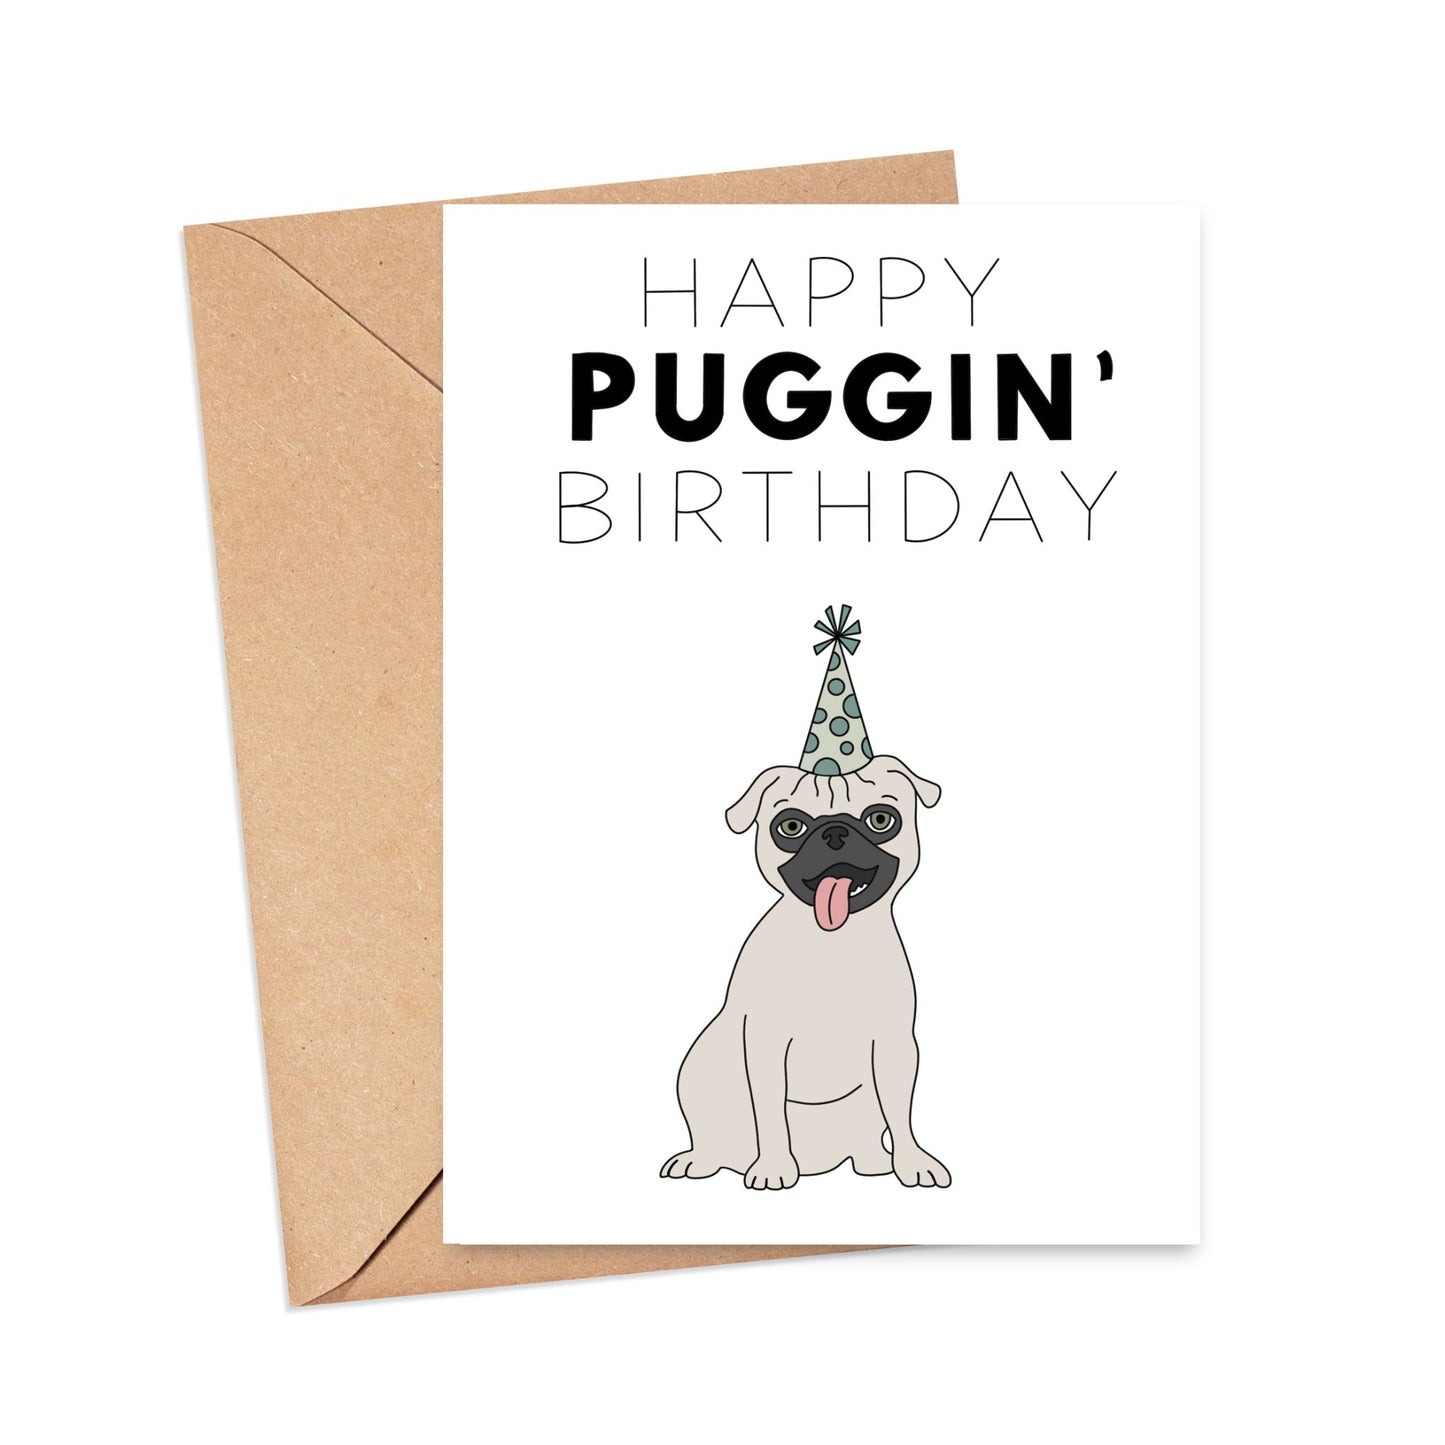 Happy Puggin' Birthday Card Simply Happy Cards